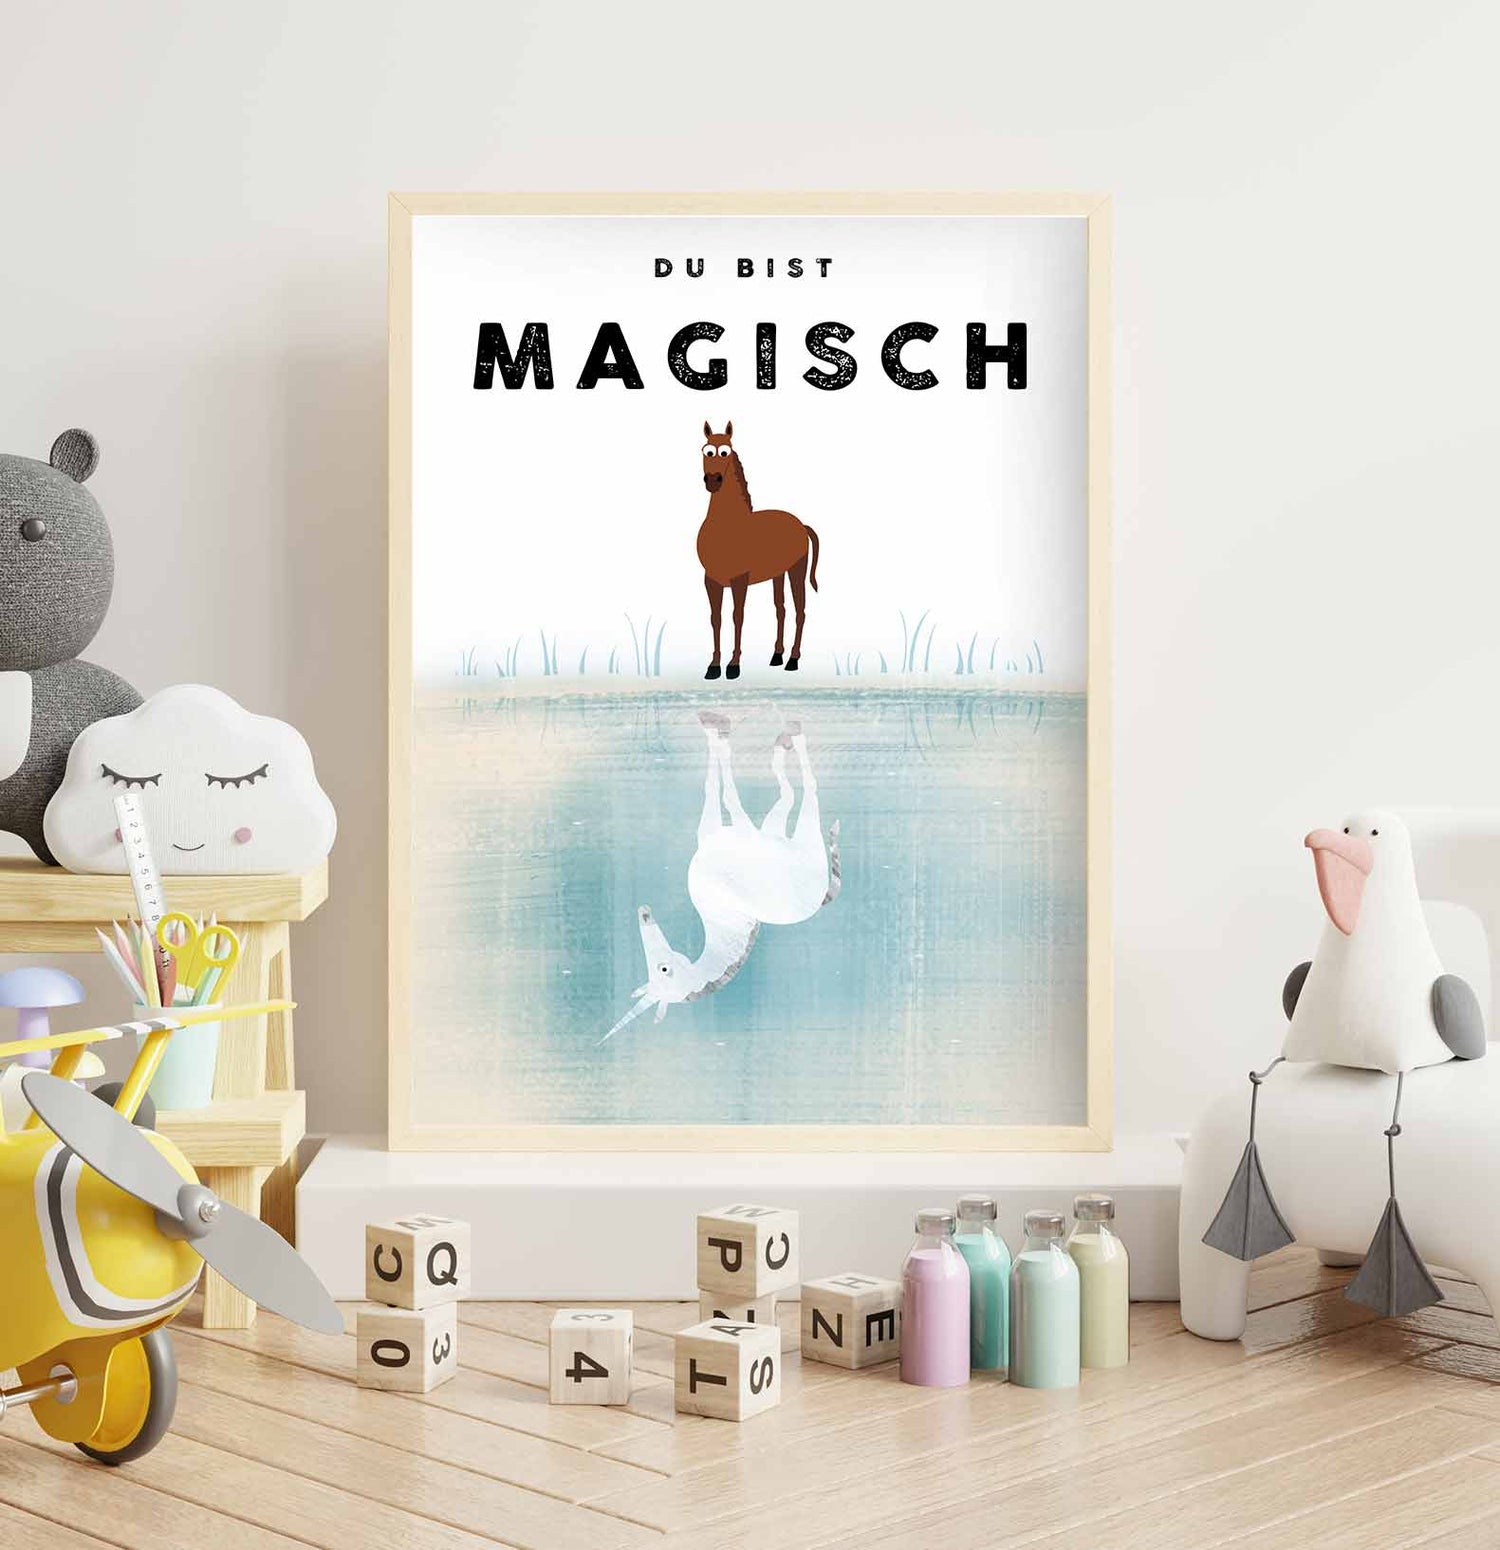    Poster_magisch3